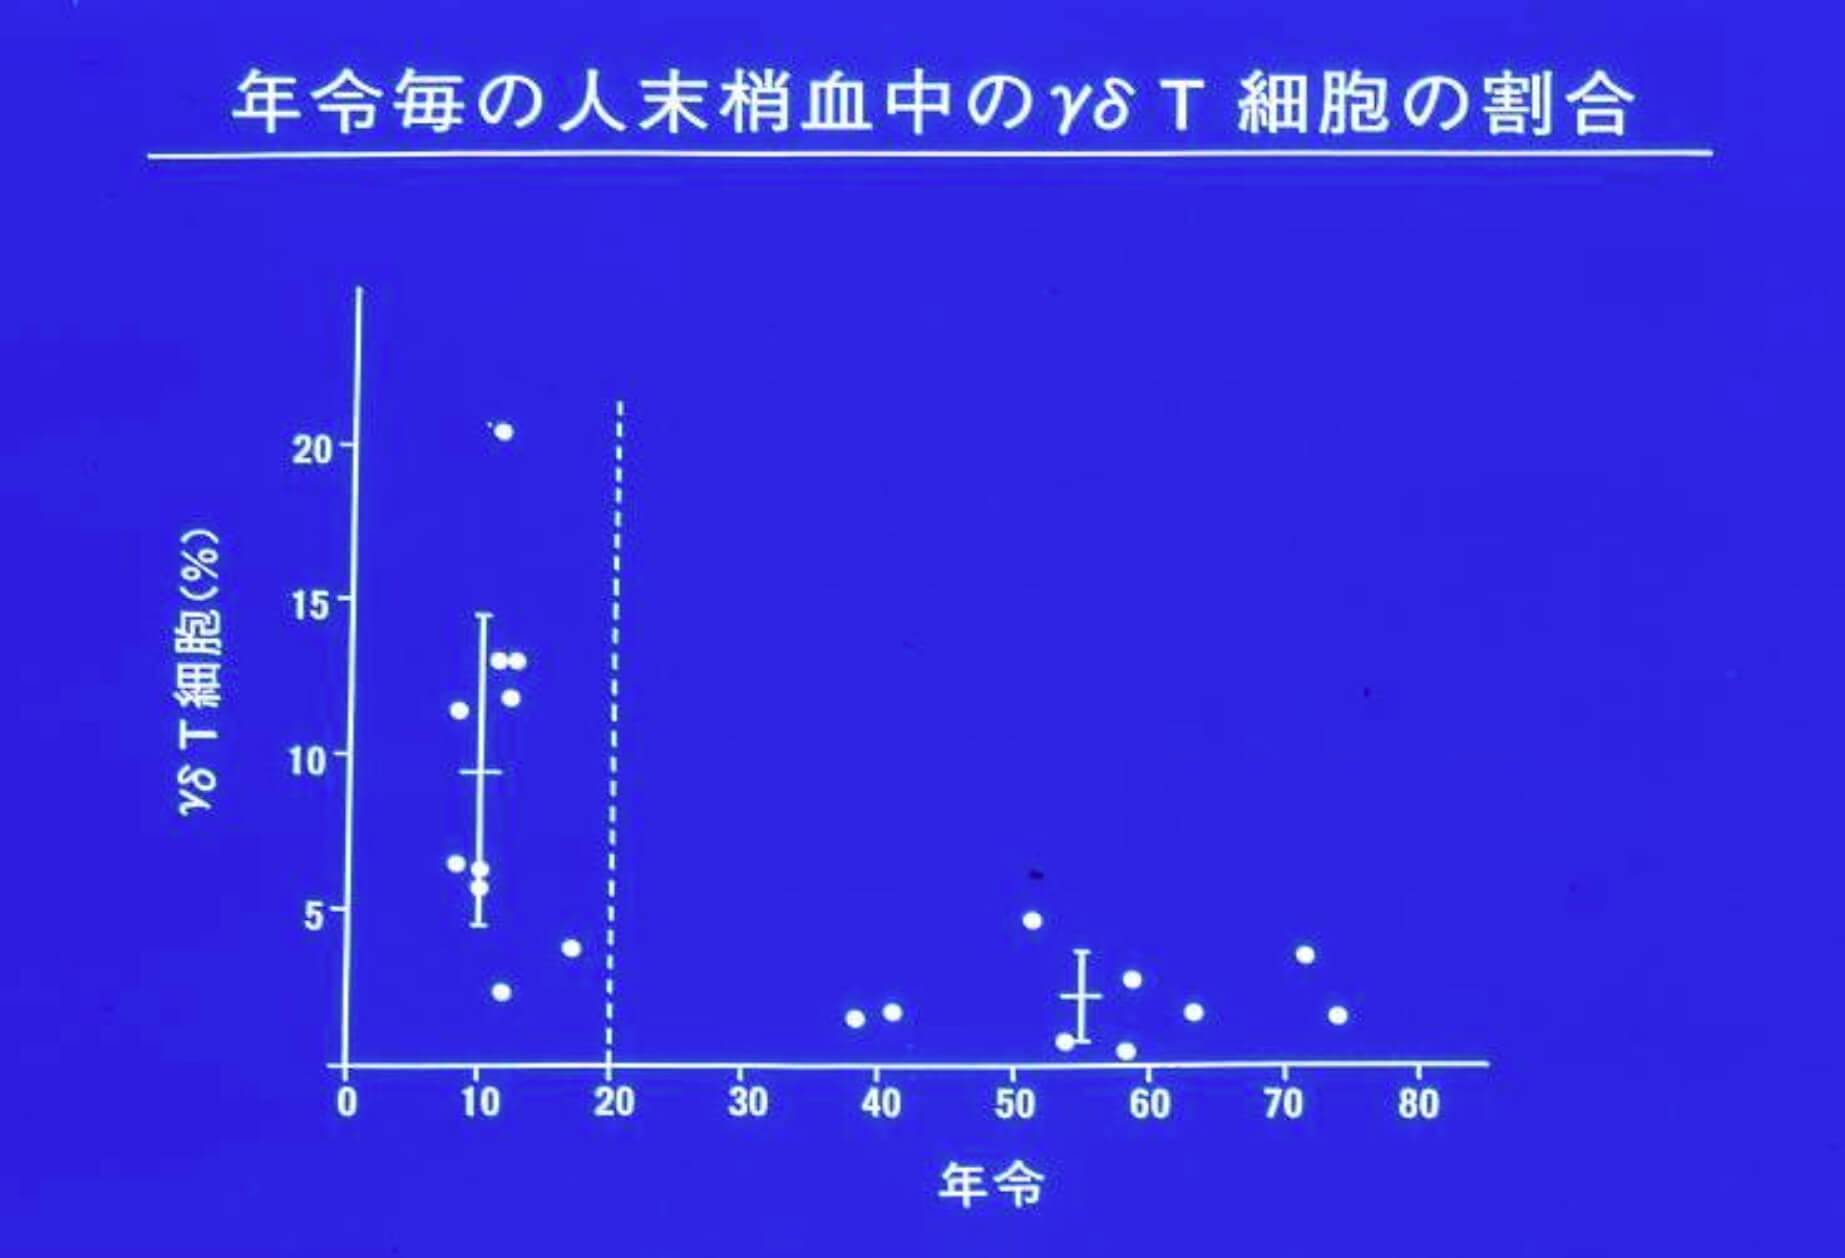 仙台微生物研究所 海老名卓三郎氏のデータ